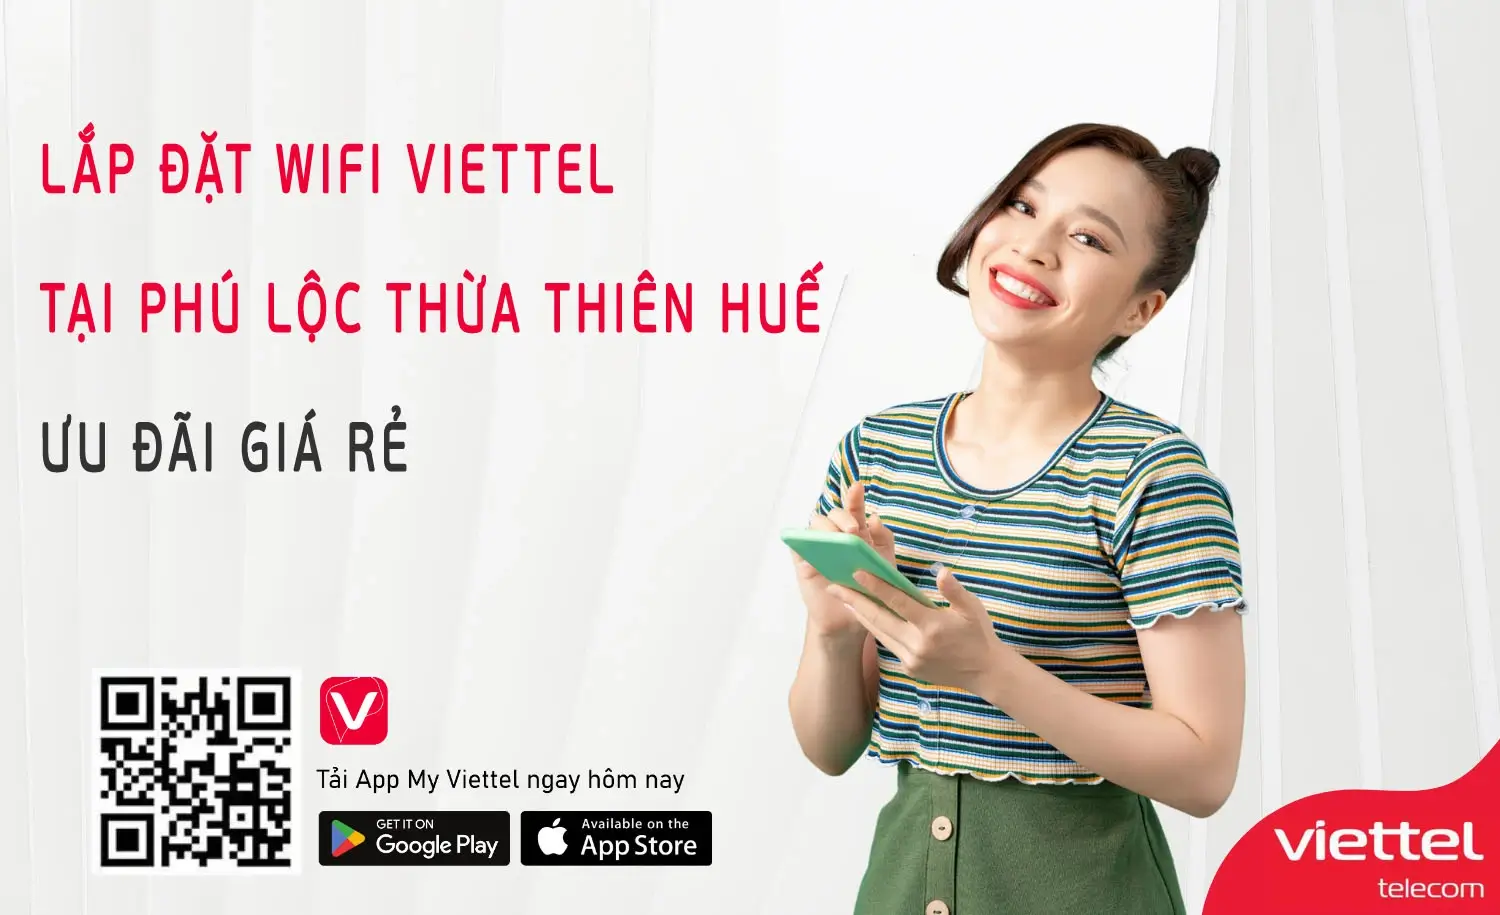 Lắp đặt wifi Viettel tại Phú Lộc Thừa Thiên Huế Ưu Đãi Giá Rẻ